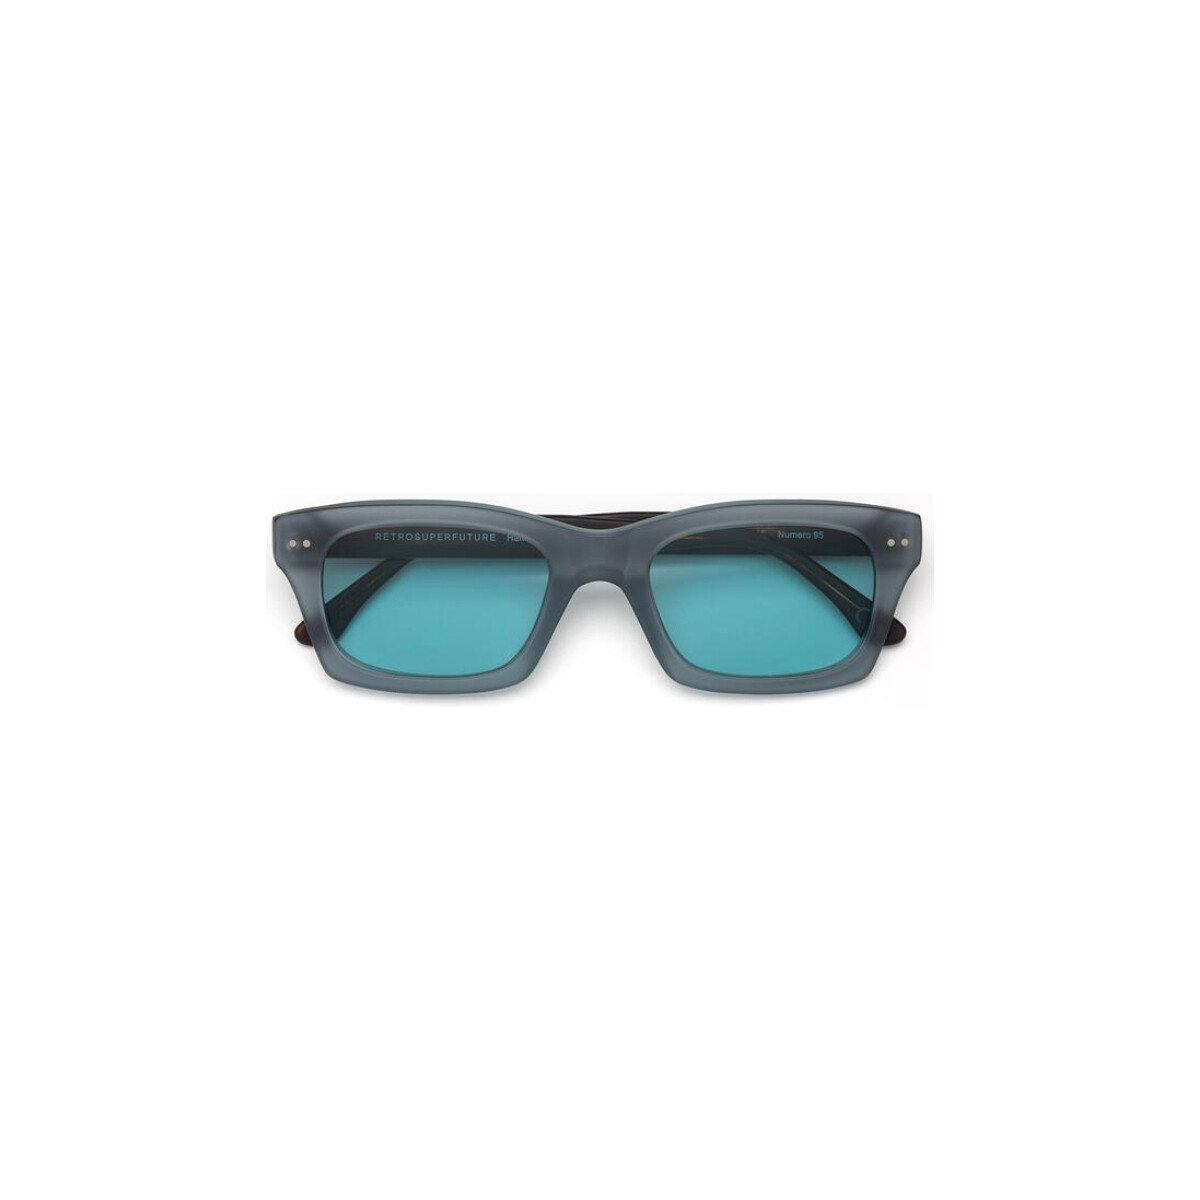 Orologi & Gioielli Occhiali da sole Retrosuperfuture JNZ Affari Occhiali da sole, Blu/Blu, 52 mm Blu